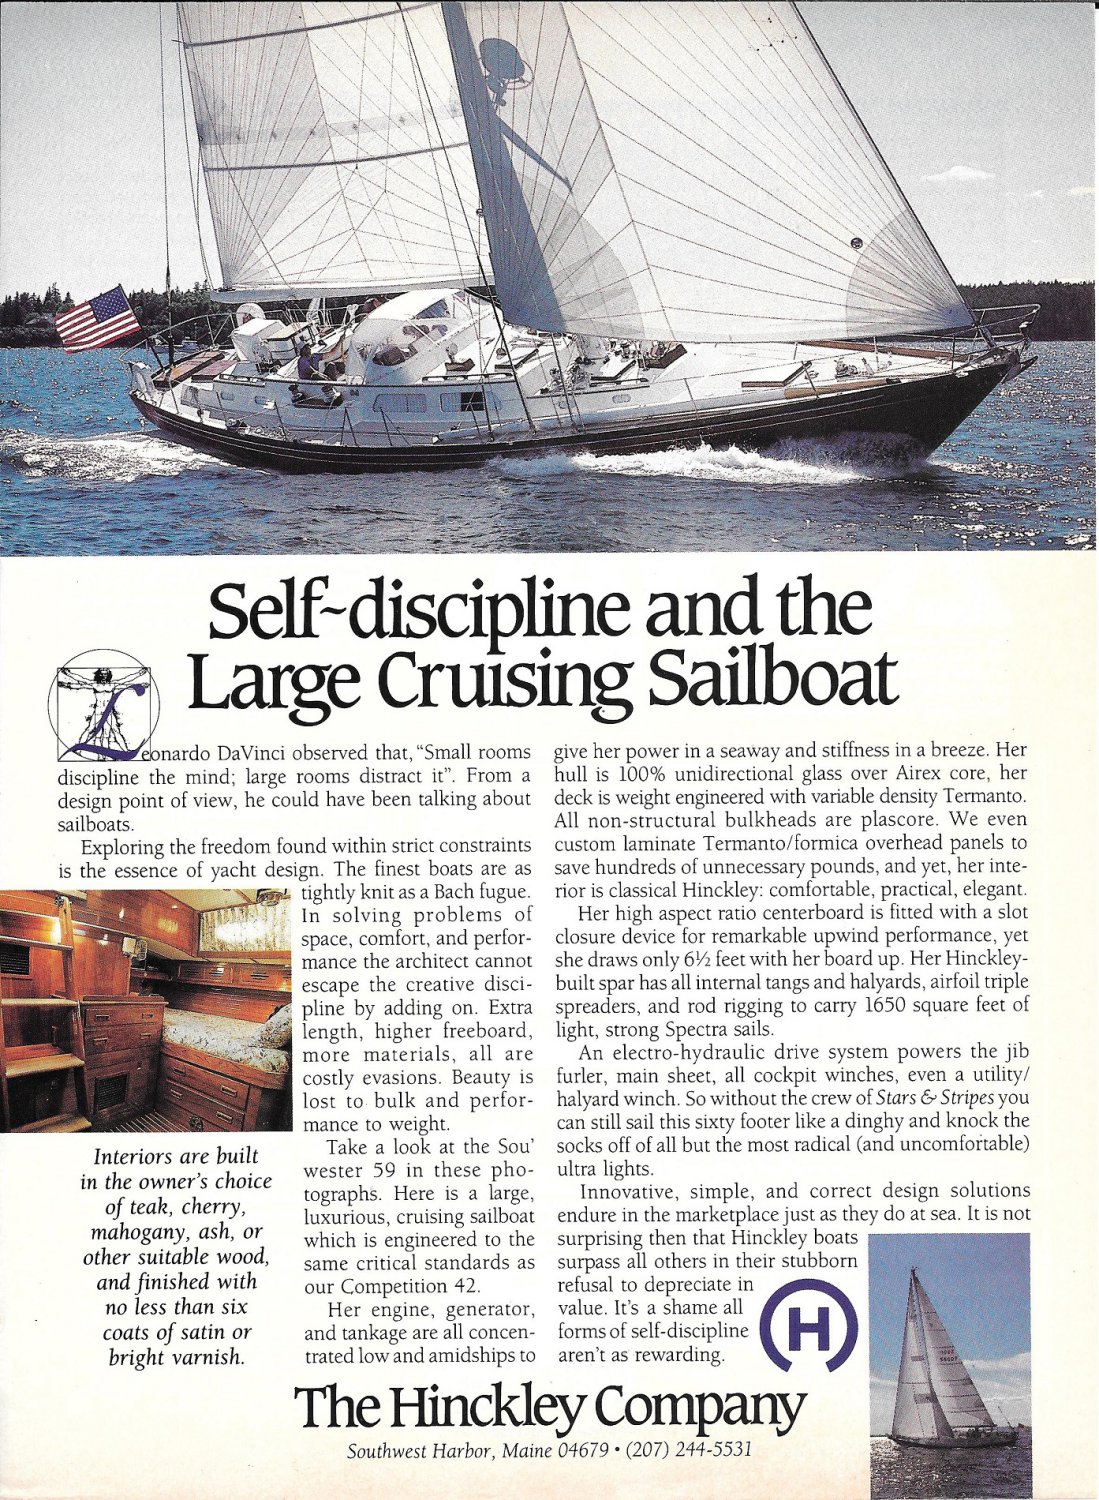 1988 Hinckley Sou' Wester 59 Sailboat Color Ad- Nice Photo